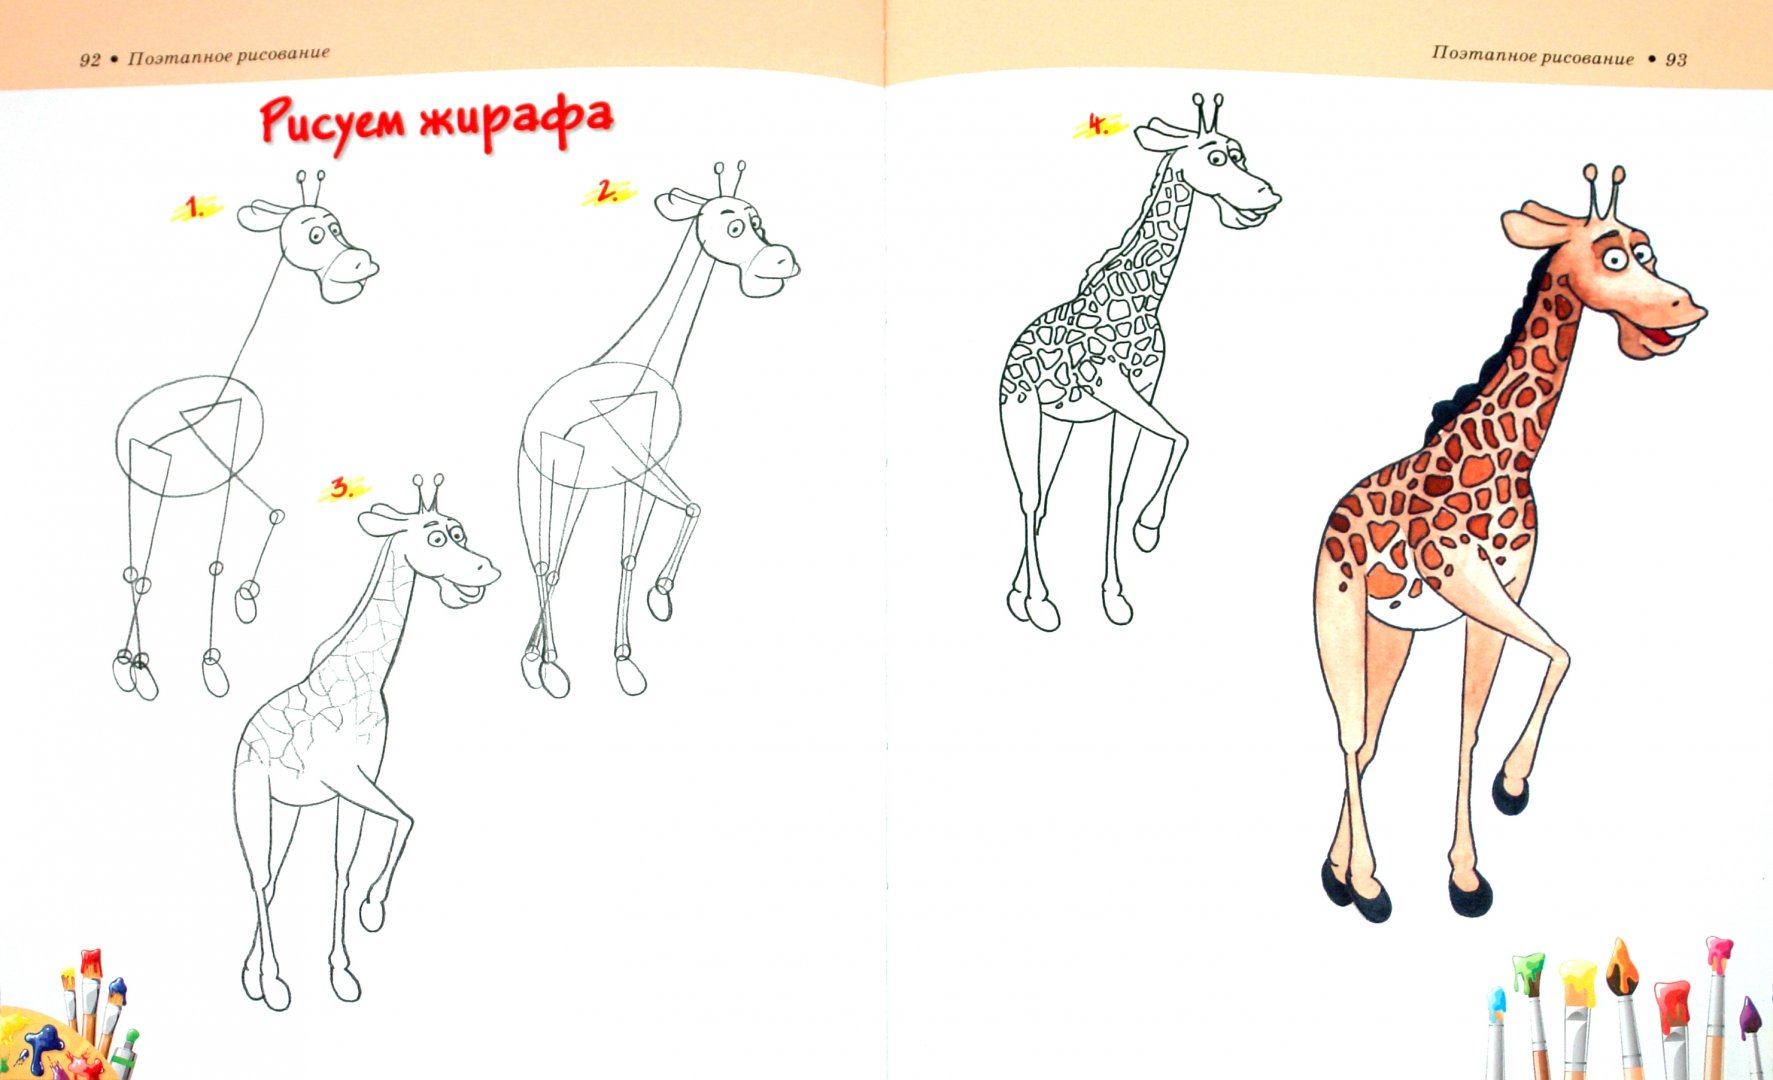 Иллюстрация 1 из 4 для Большой учебник рисования для детей - Анна Мурзина | Лабиринт - книги. Источник: Лабиринт